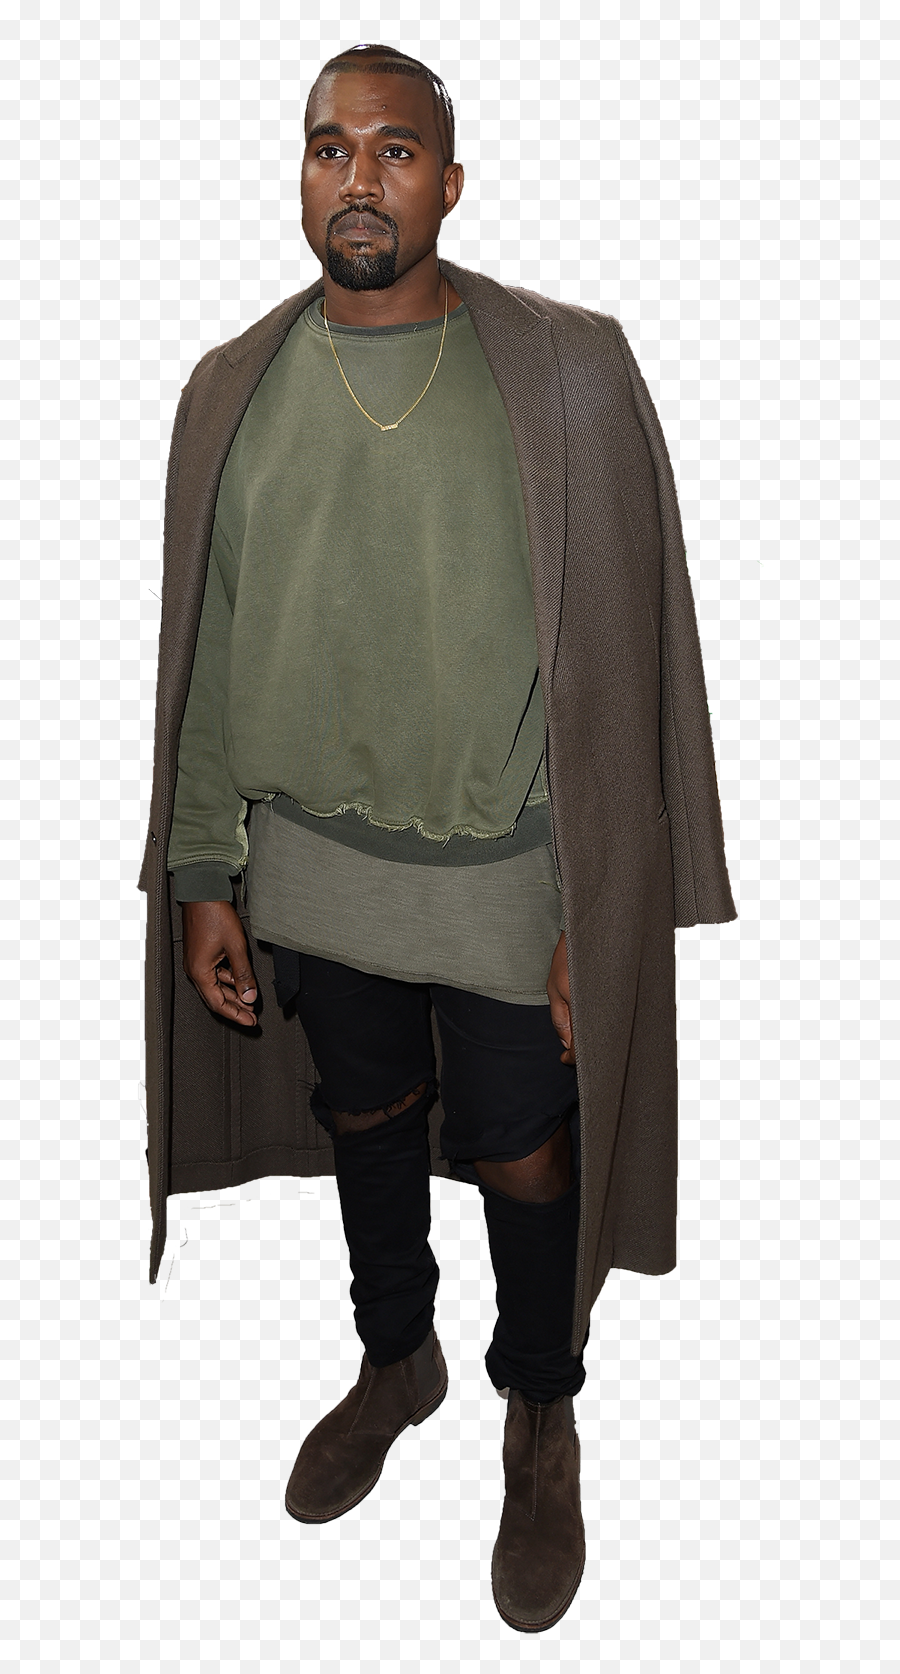 Kanye West Transparent Background - Kanye West Full Body Transparent Background Emoji,Kanye Shrug Emoji